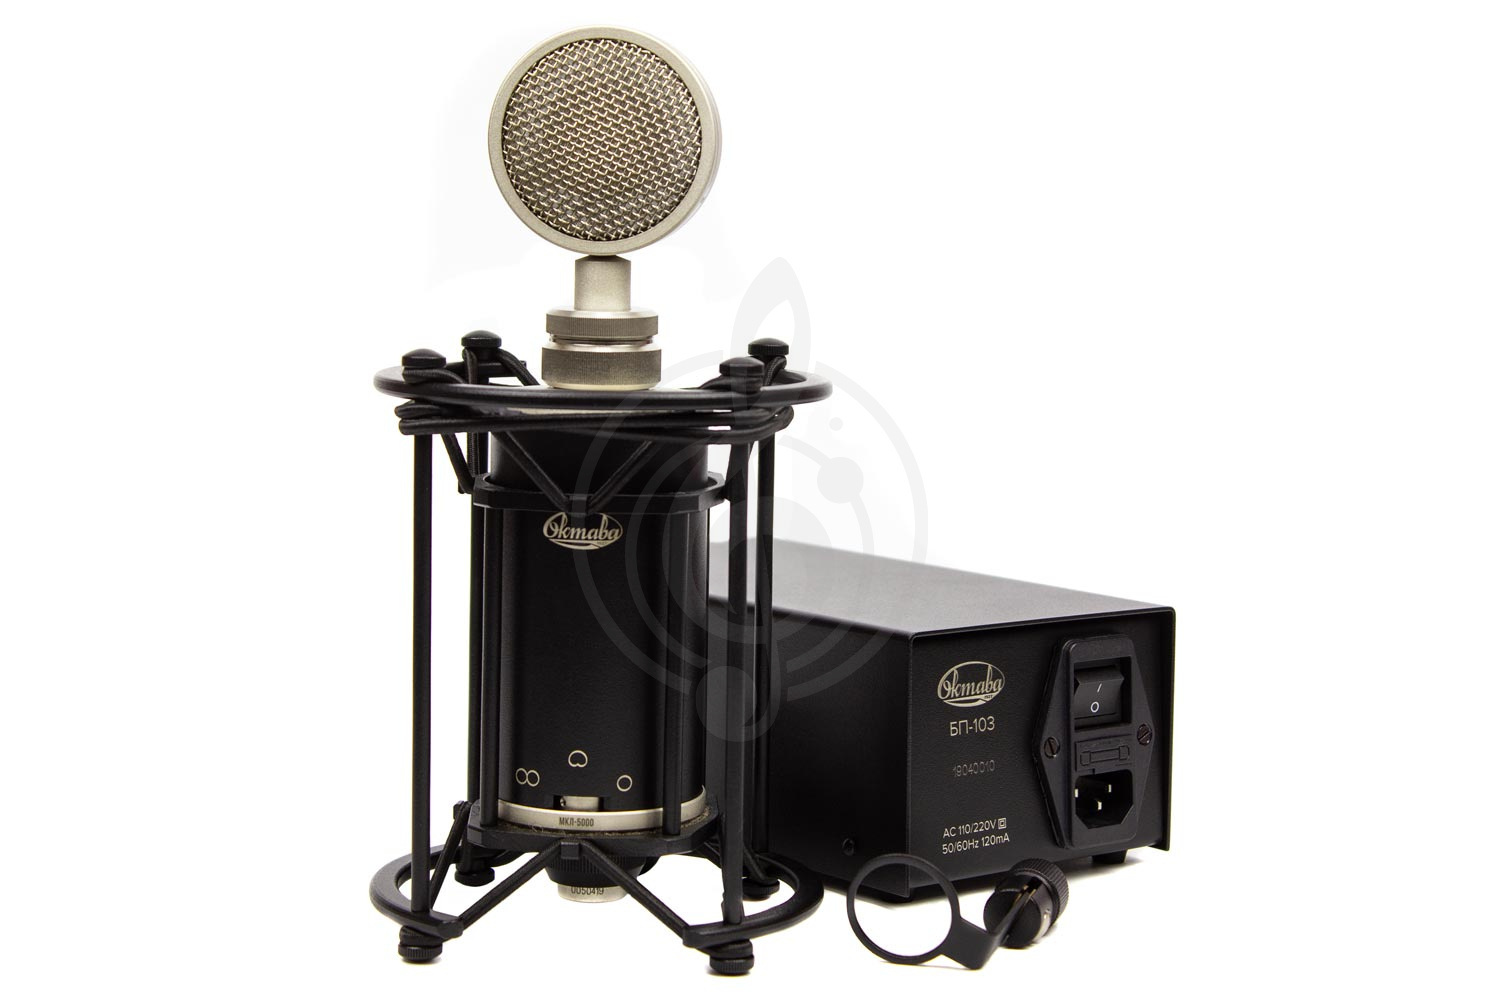 Ламповый студийный микрофон Ламповые студийные микрофоны Октава Октава МКЛ-5000 с БП-103 - микрофон студийный конденсаторный ламповый МКЛ-5000 - фото 1